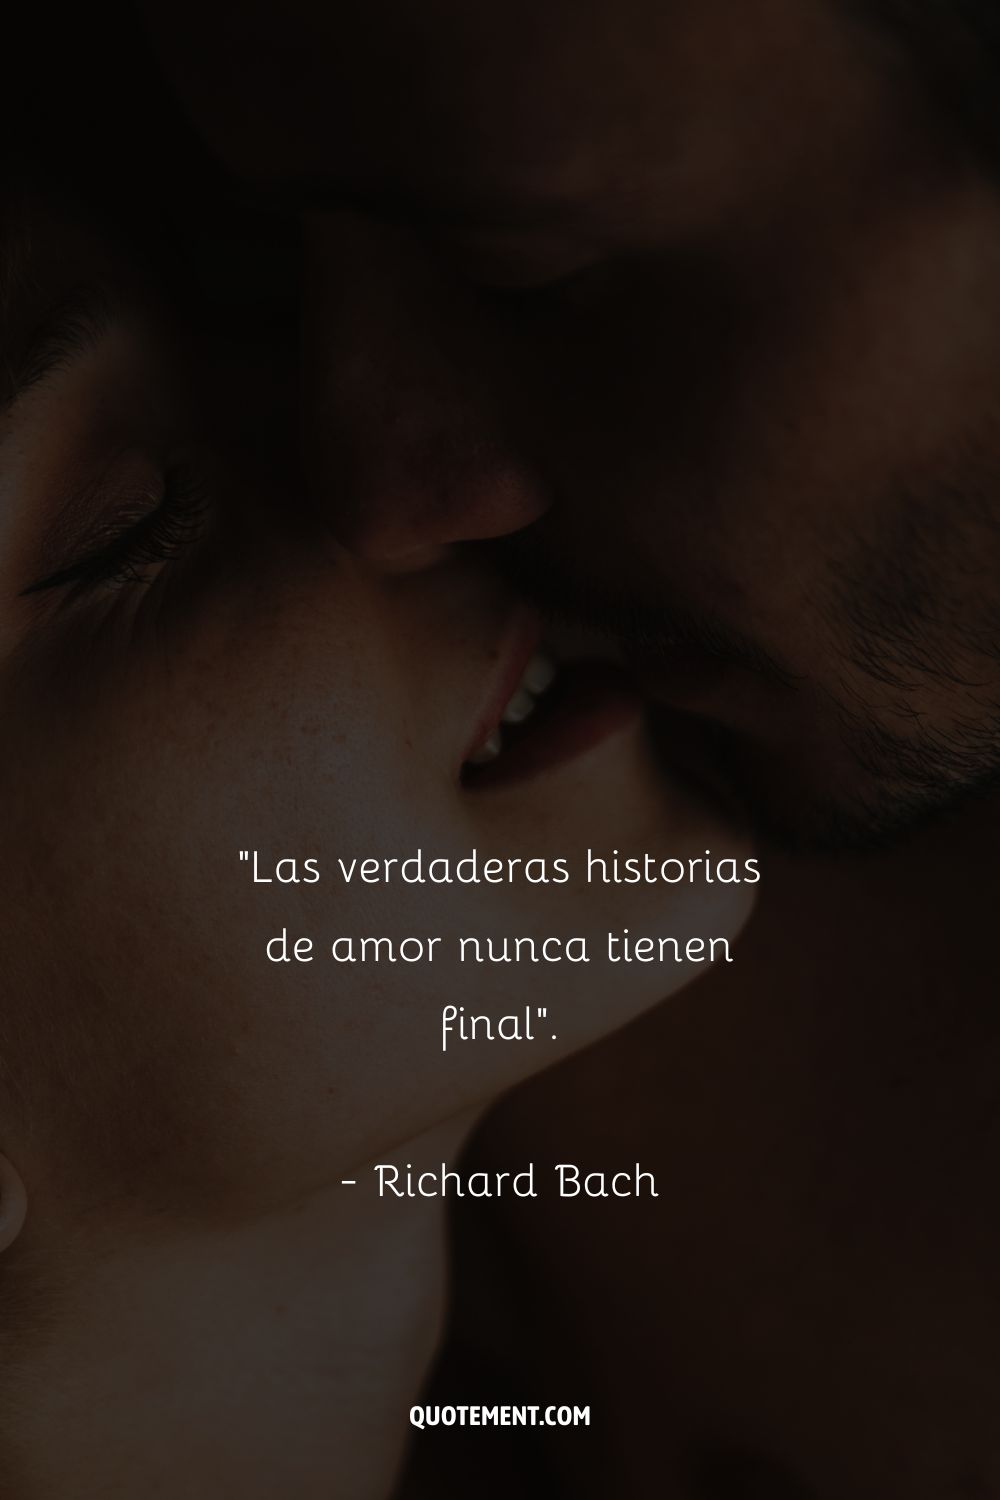 Las verdaderas historias de amor nunca tienen final. - Richard Bach